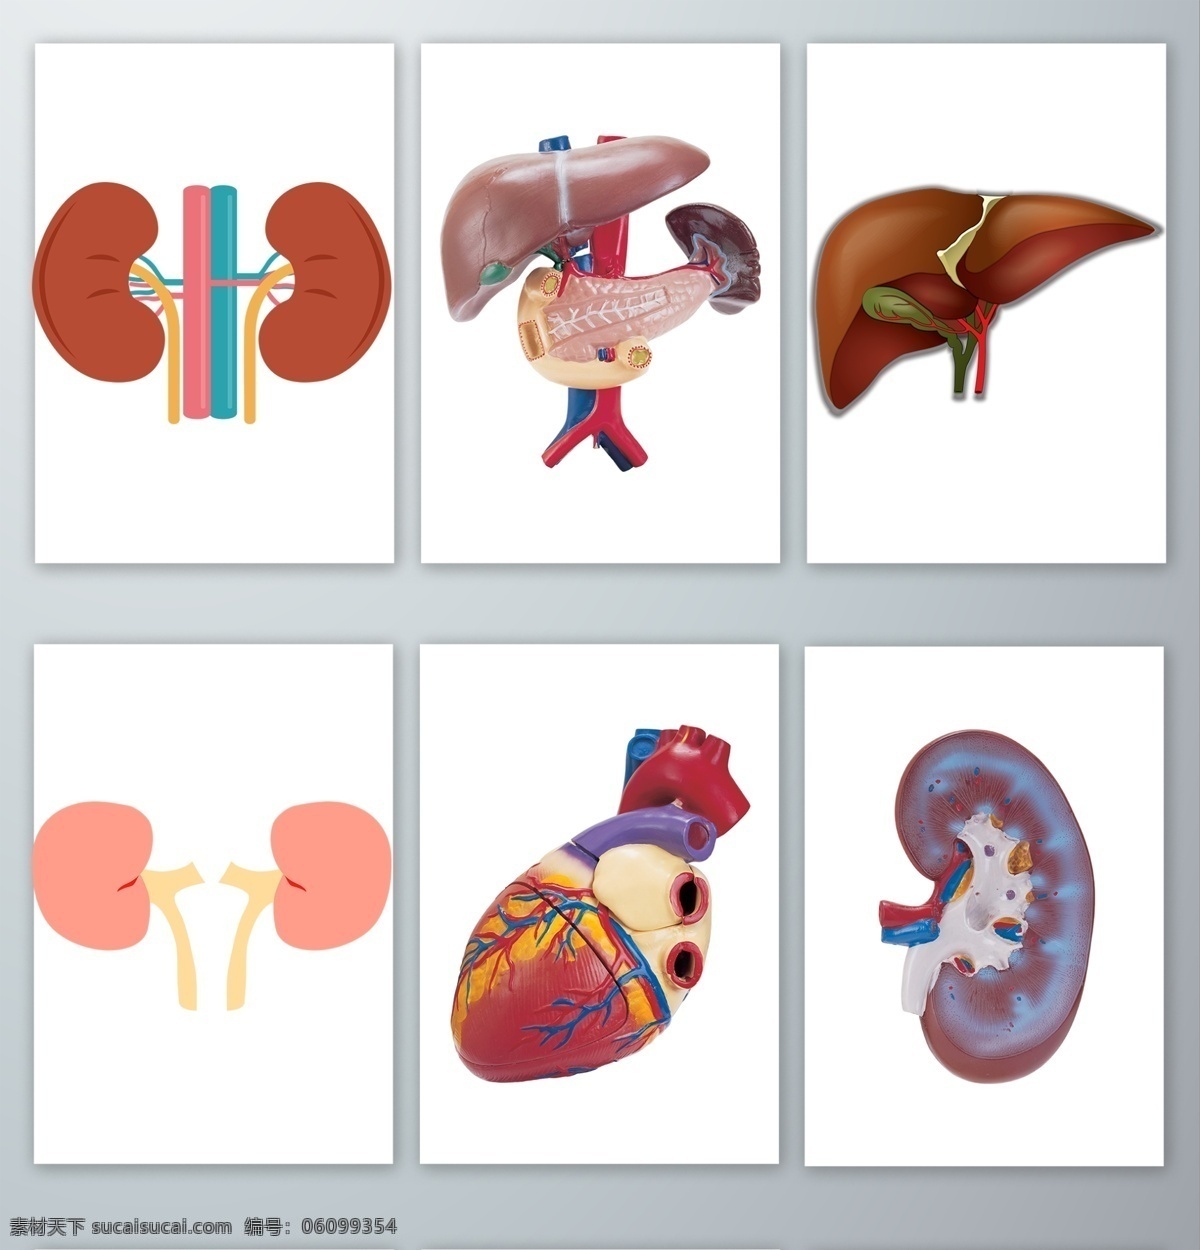 人体 内脏 器官 免 抠 人体内脏器官 手绘 心脏 肝脏 肾脏 设计素材 元素 透明png png格式 分层 背景素材